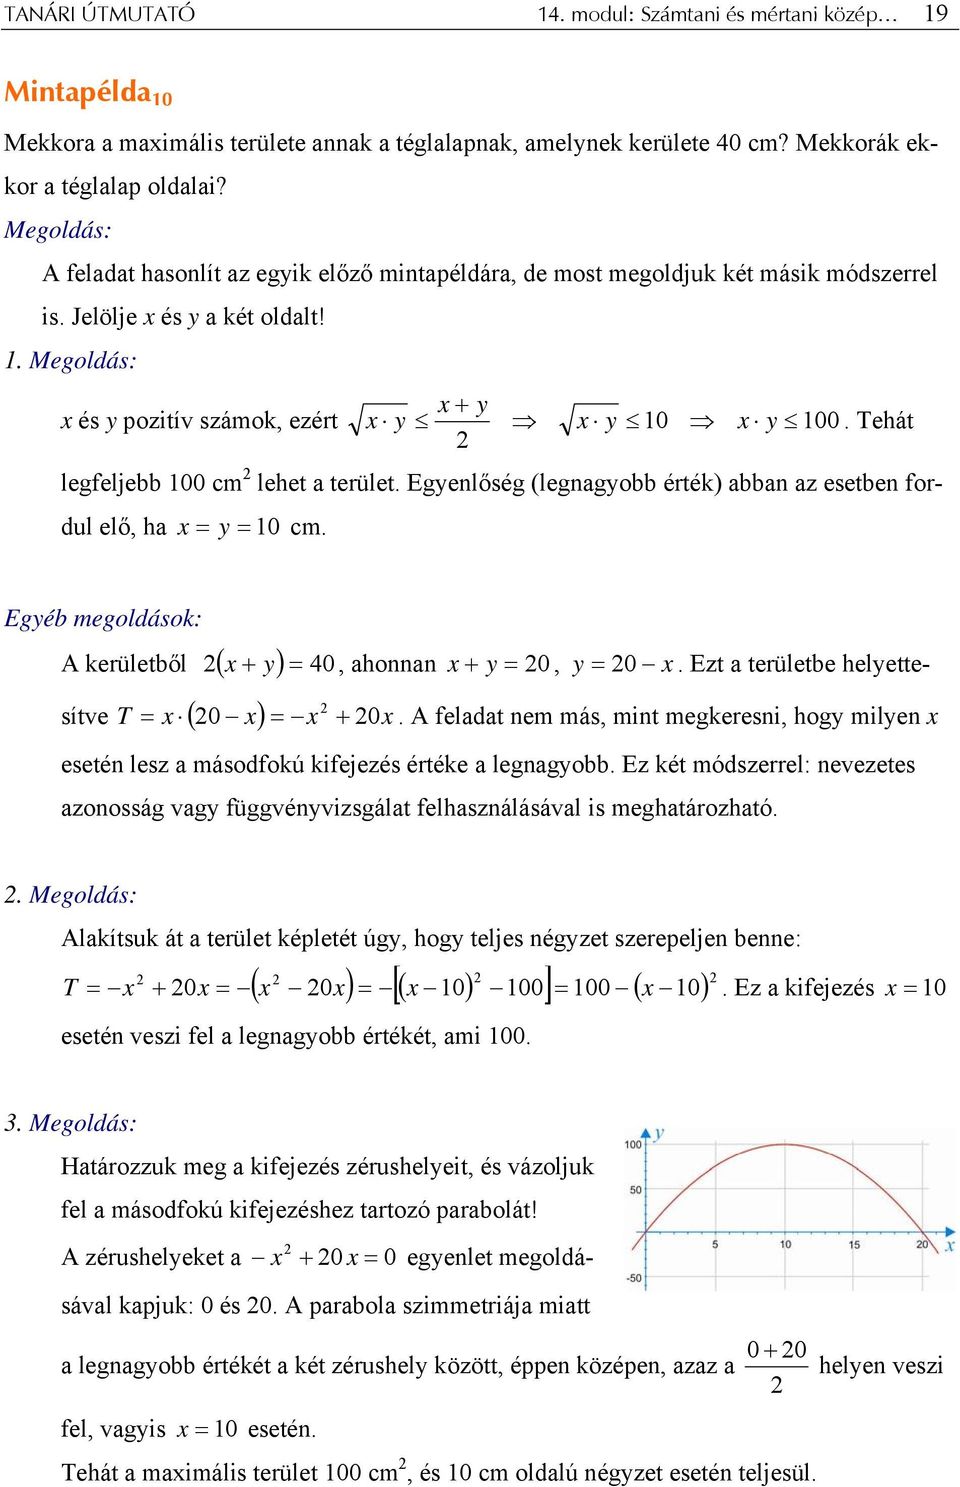 Tehát legfeljebb 100 cm lehet terület. Egyenlőség (legngyobb érték) bbn z esetben fordul elő, h x = y = 10 cm. Egyéb megoldások: A kerületből ( + y) = 40 x, honnn x + y = 0, y = 0 x.